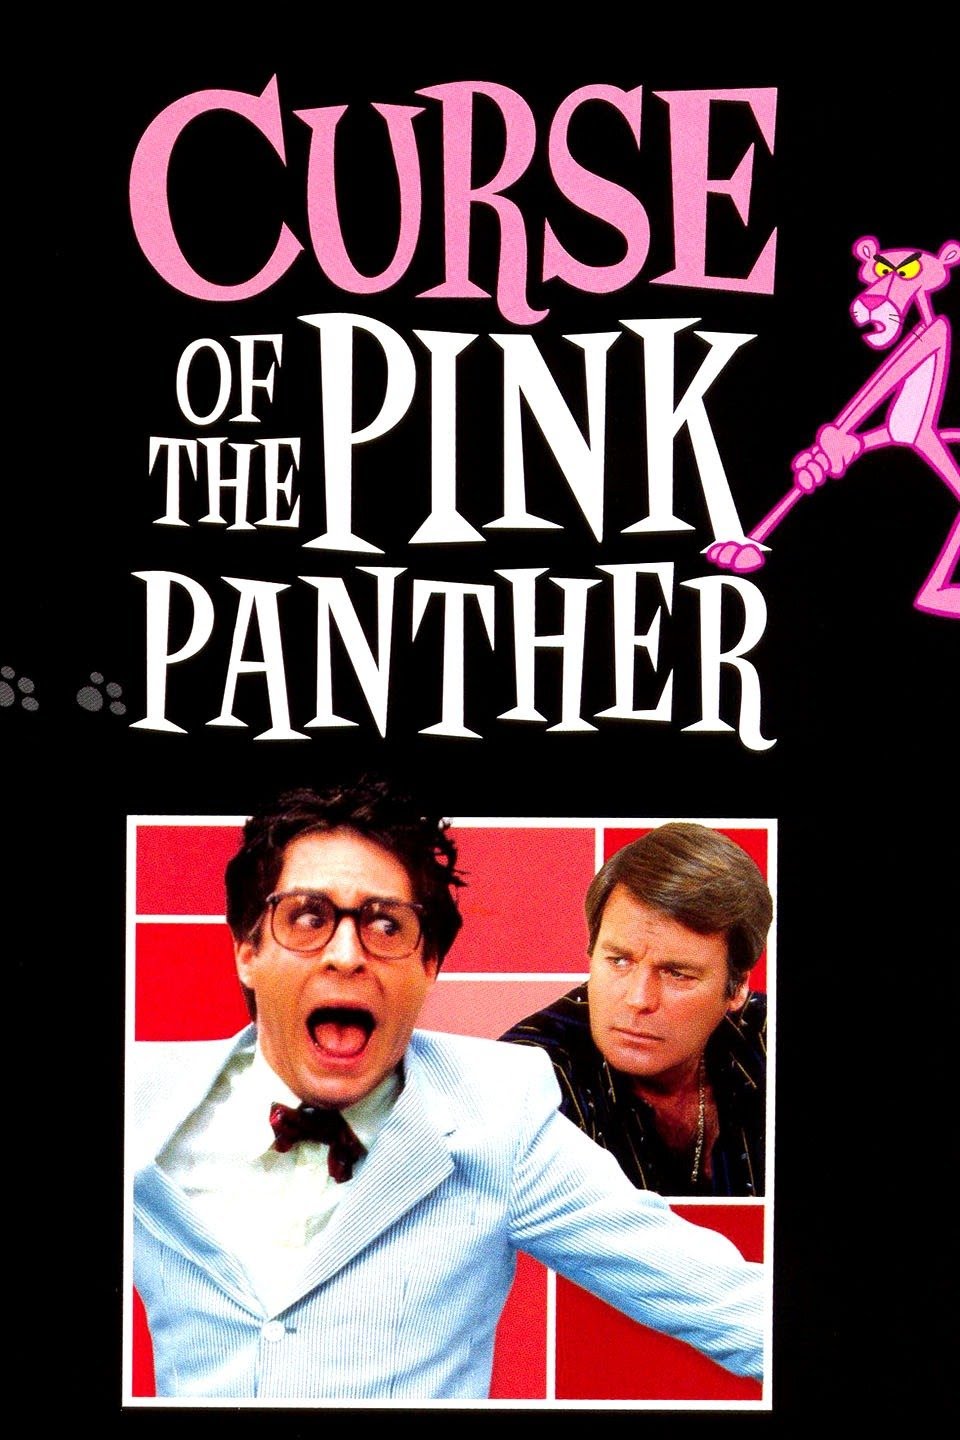 Pink Panther, VS Battles Wiki